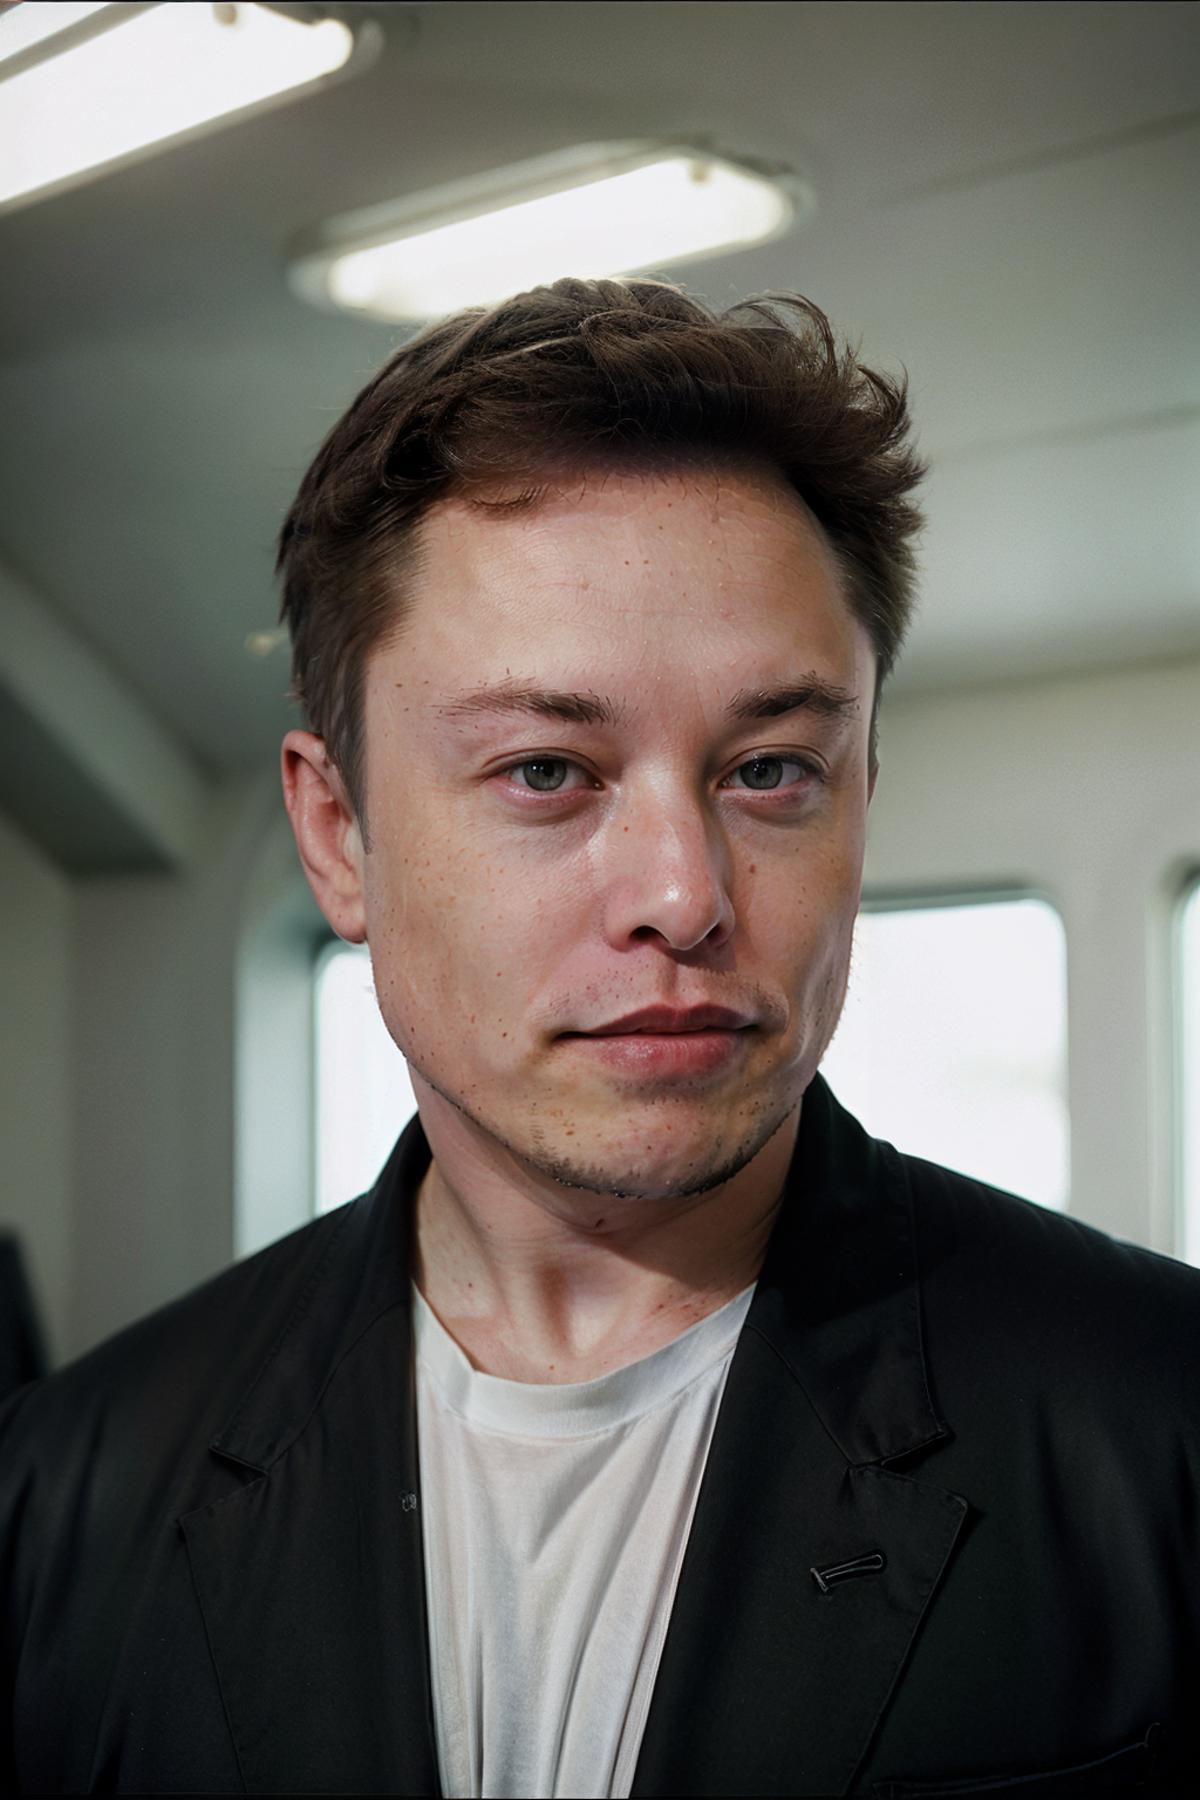 Elon Musk image by Looker